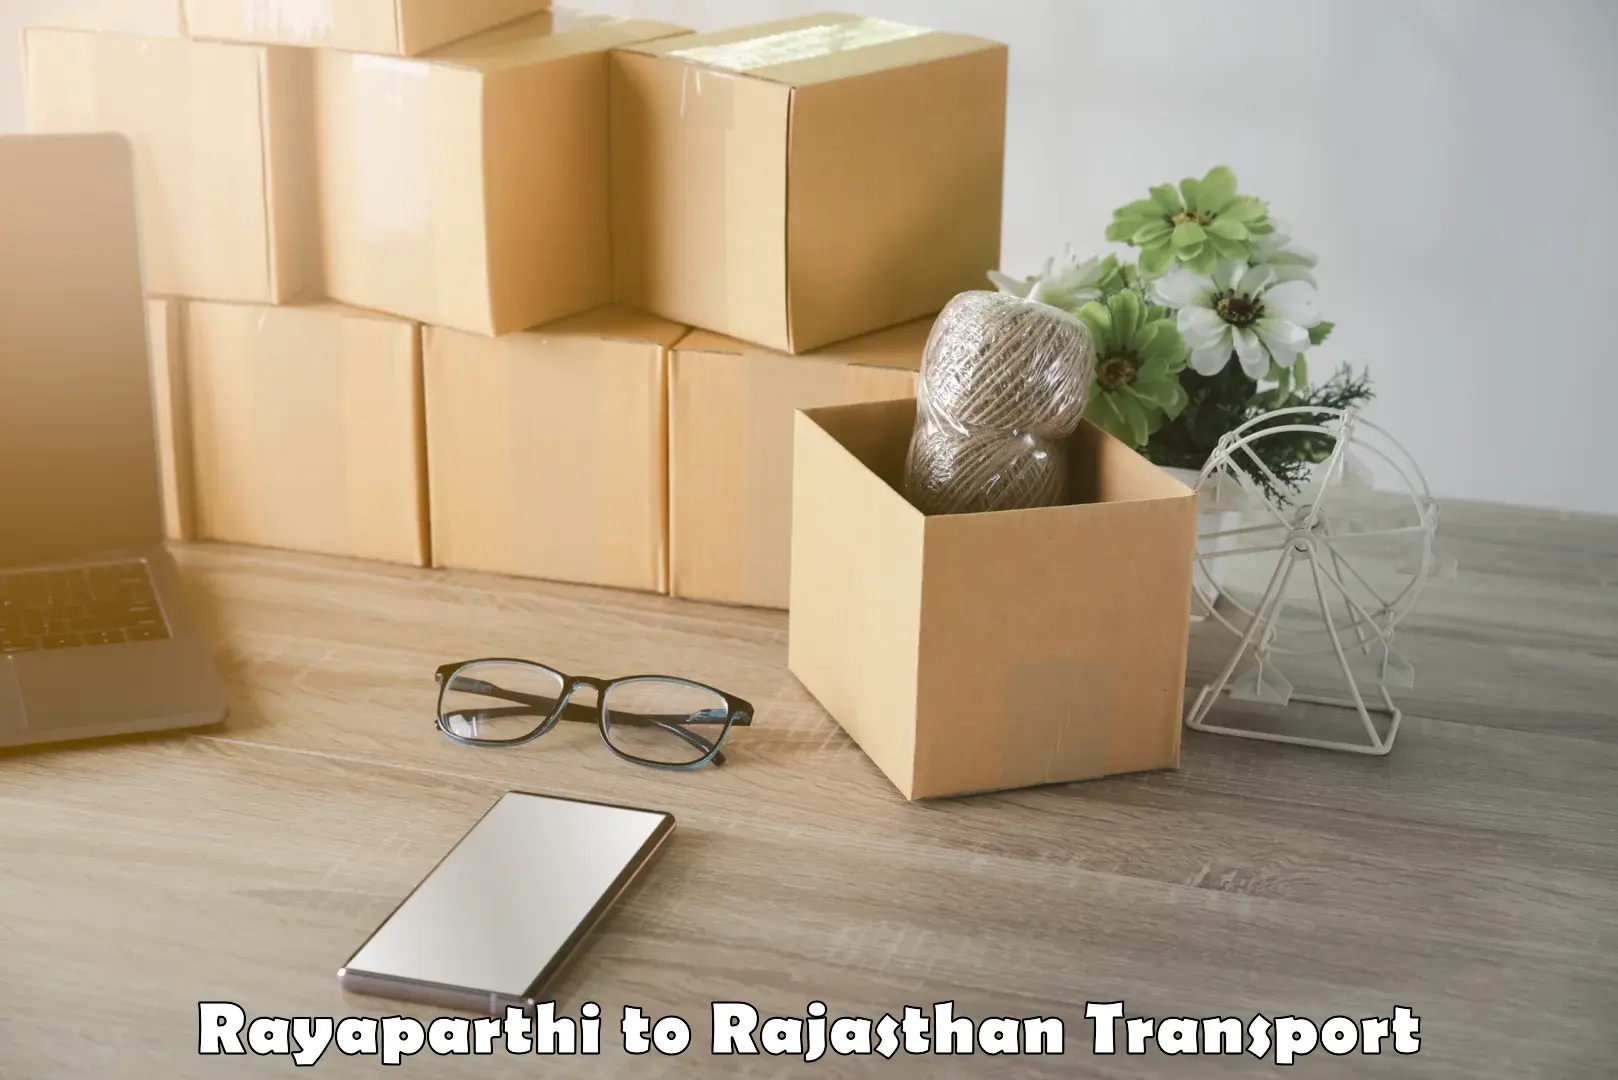 Land transport services in Rayaparthi to Rajasthan